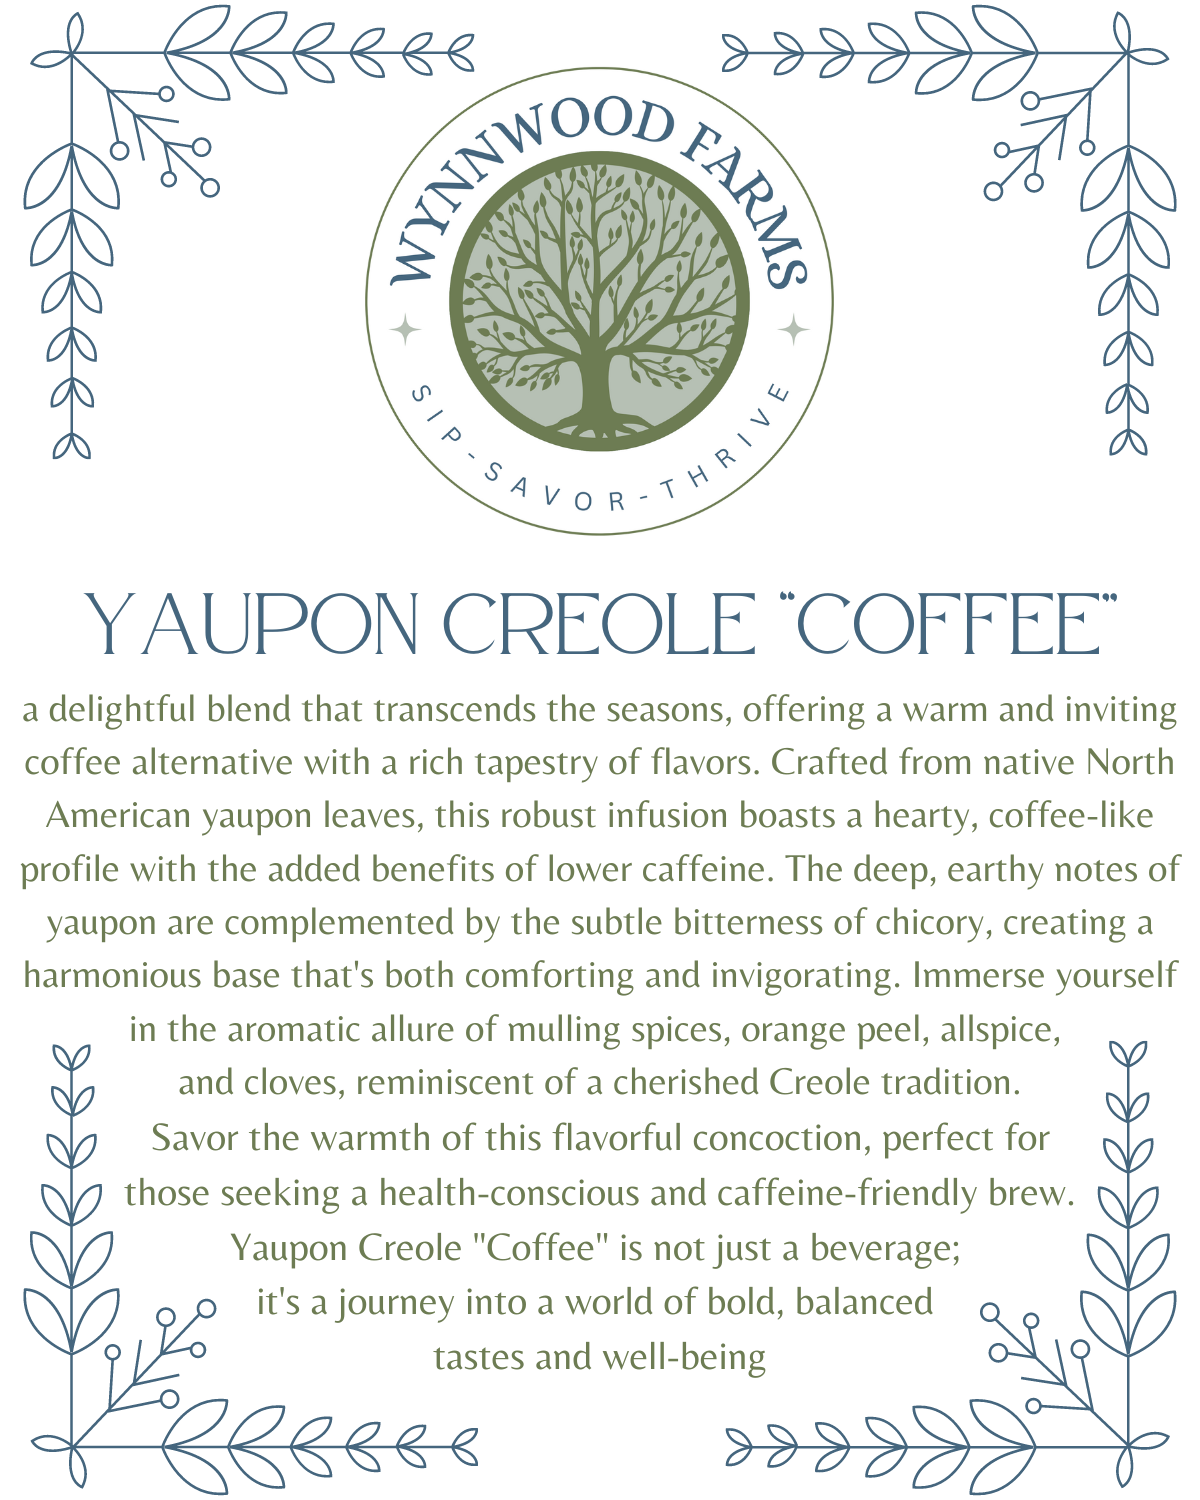 Yaupon Creole “Coffee” - Caffeinated